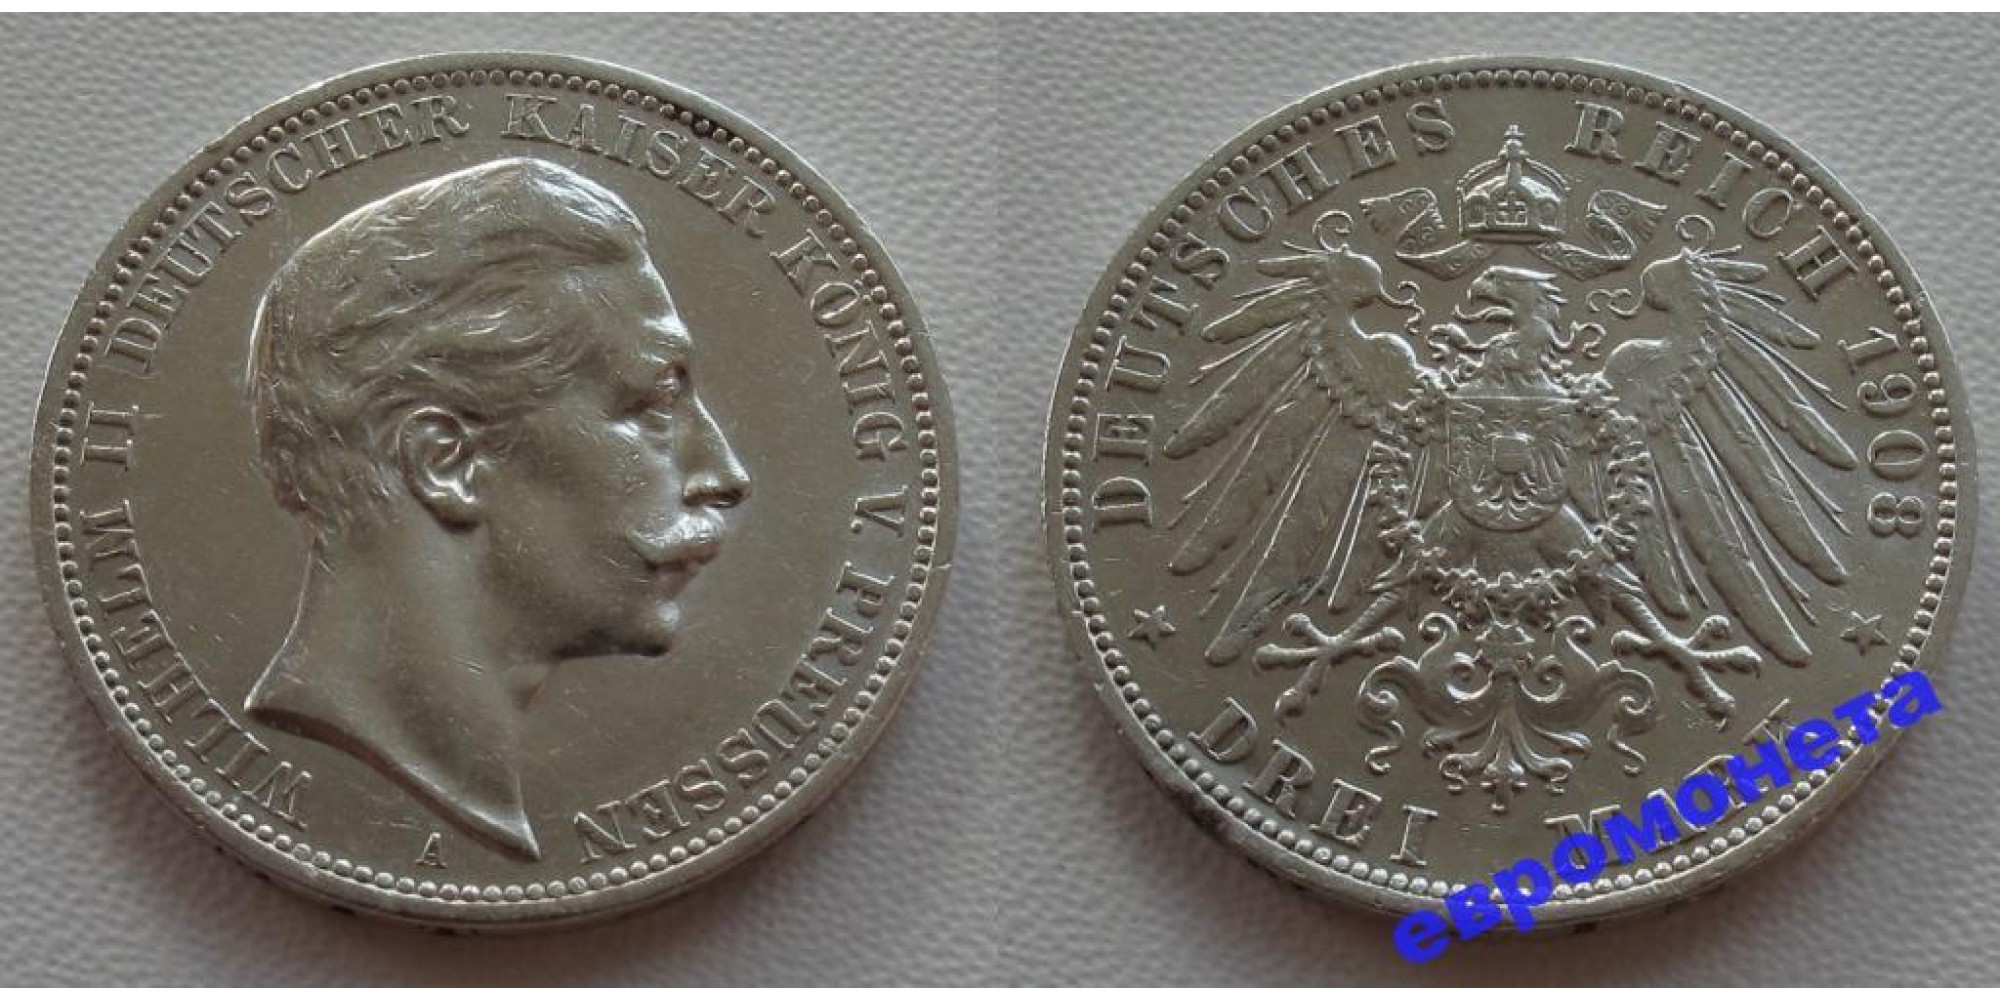 Германия Пруссия 3 марки 1908 год A монета на фотографии серебро